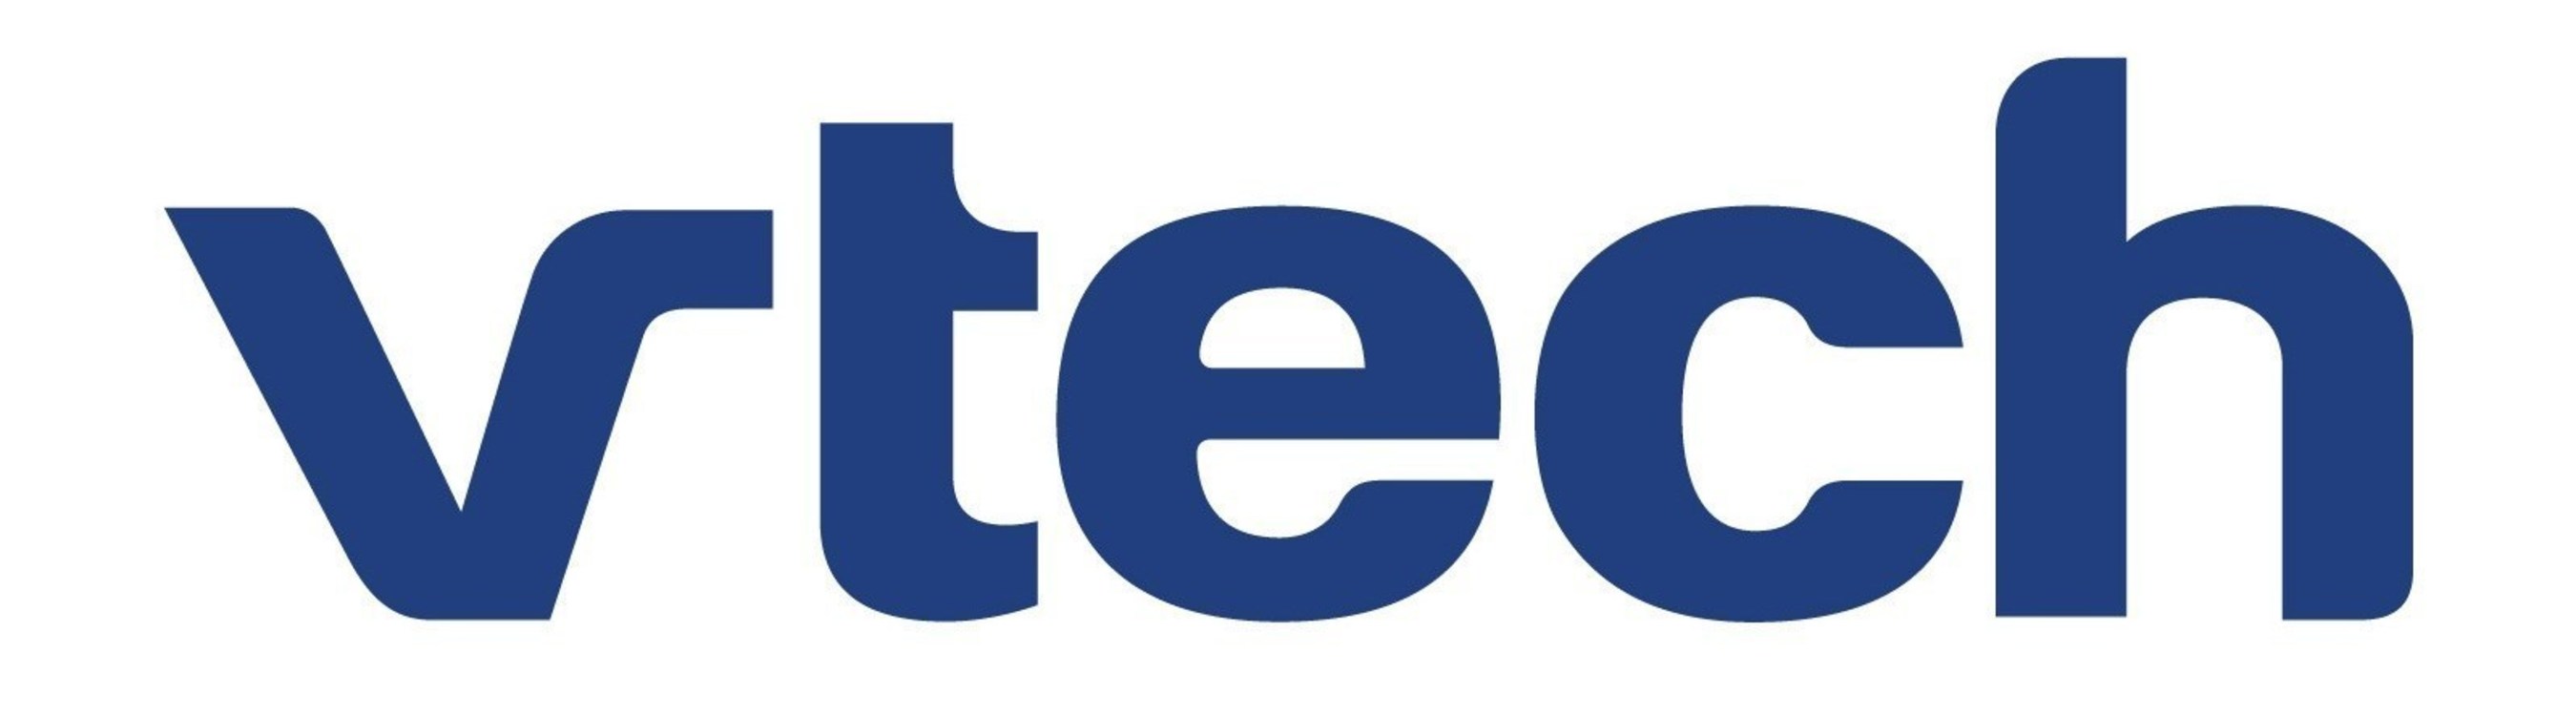 Vtech Hldgs Ltd Brand Logo